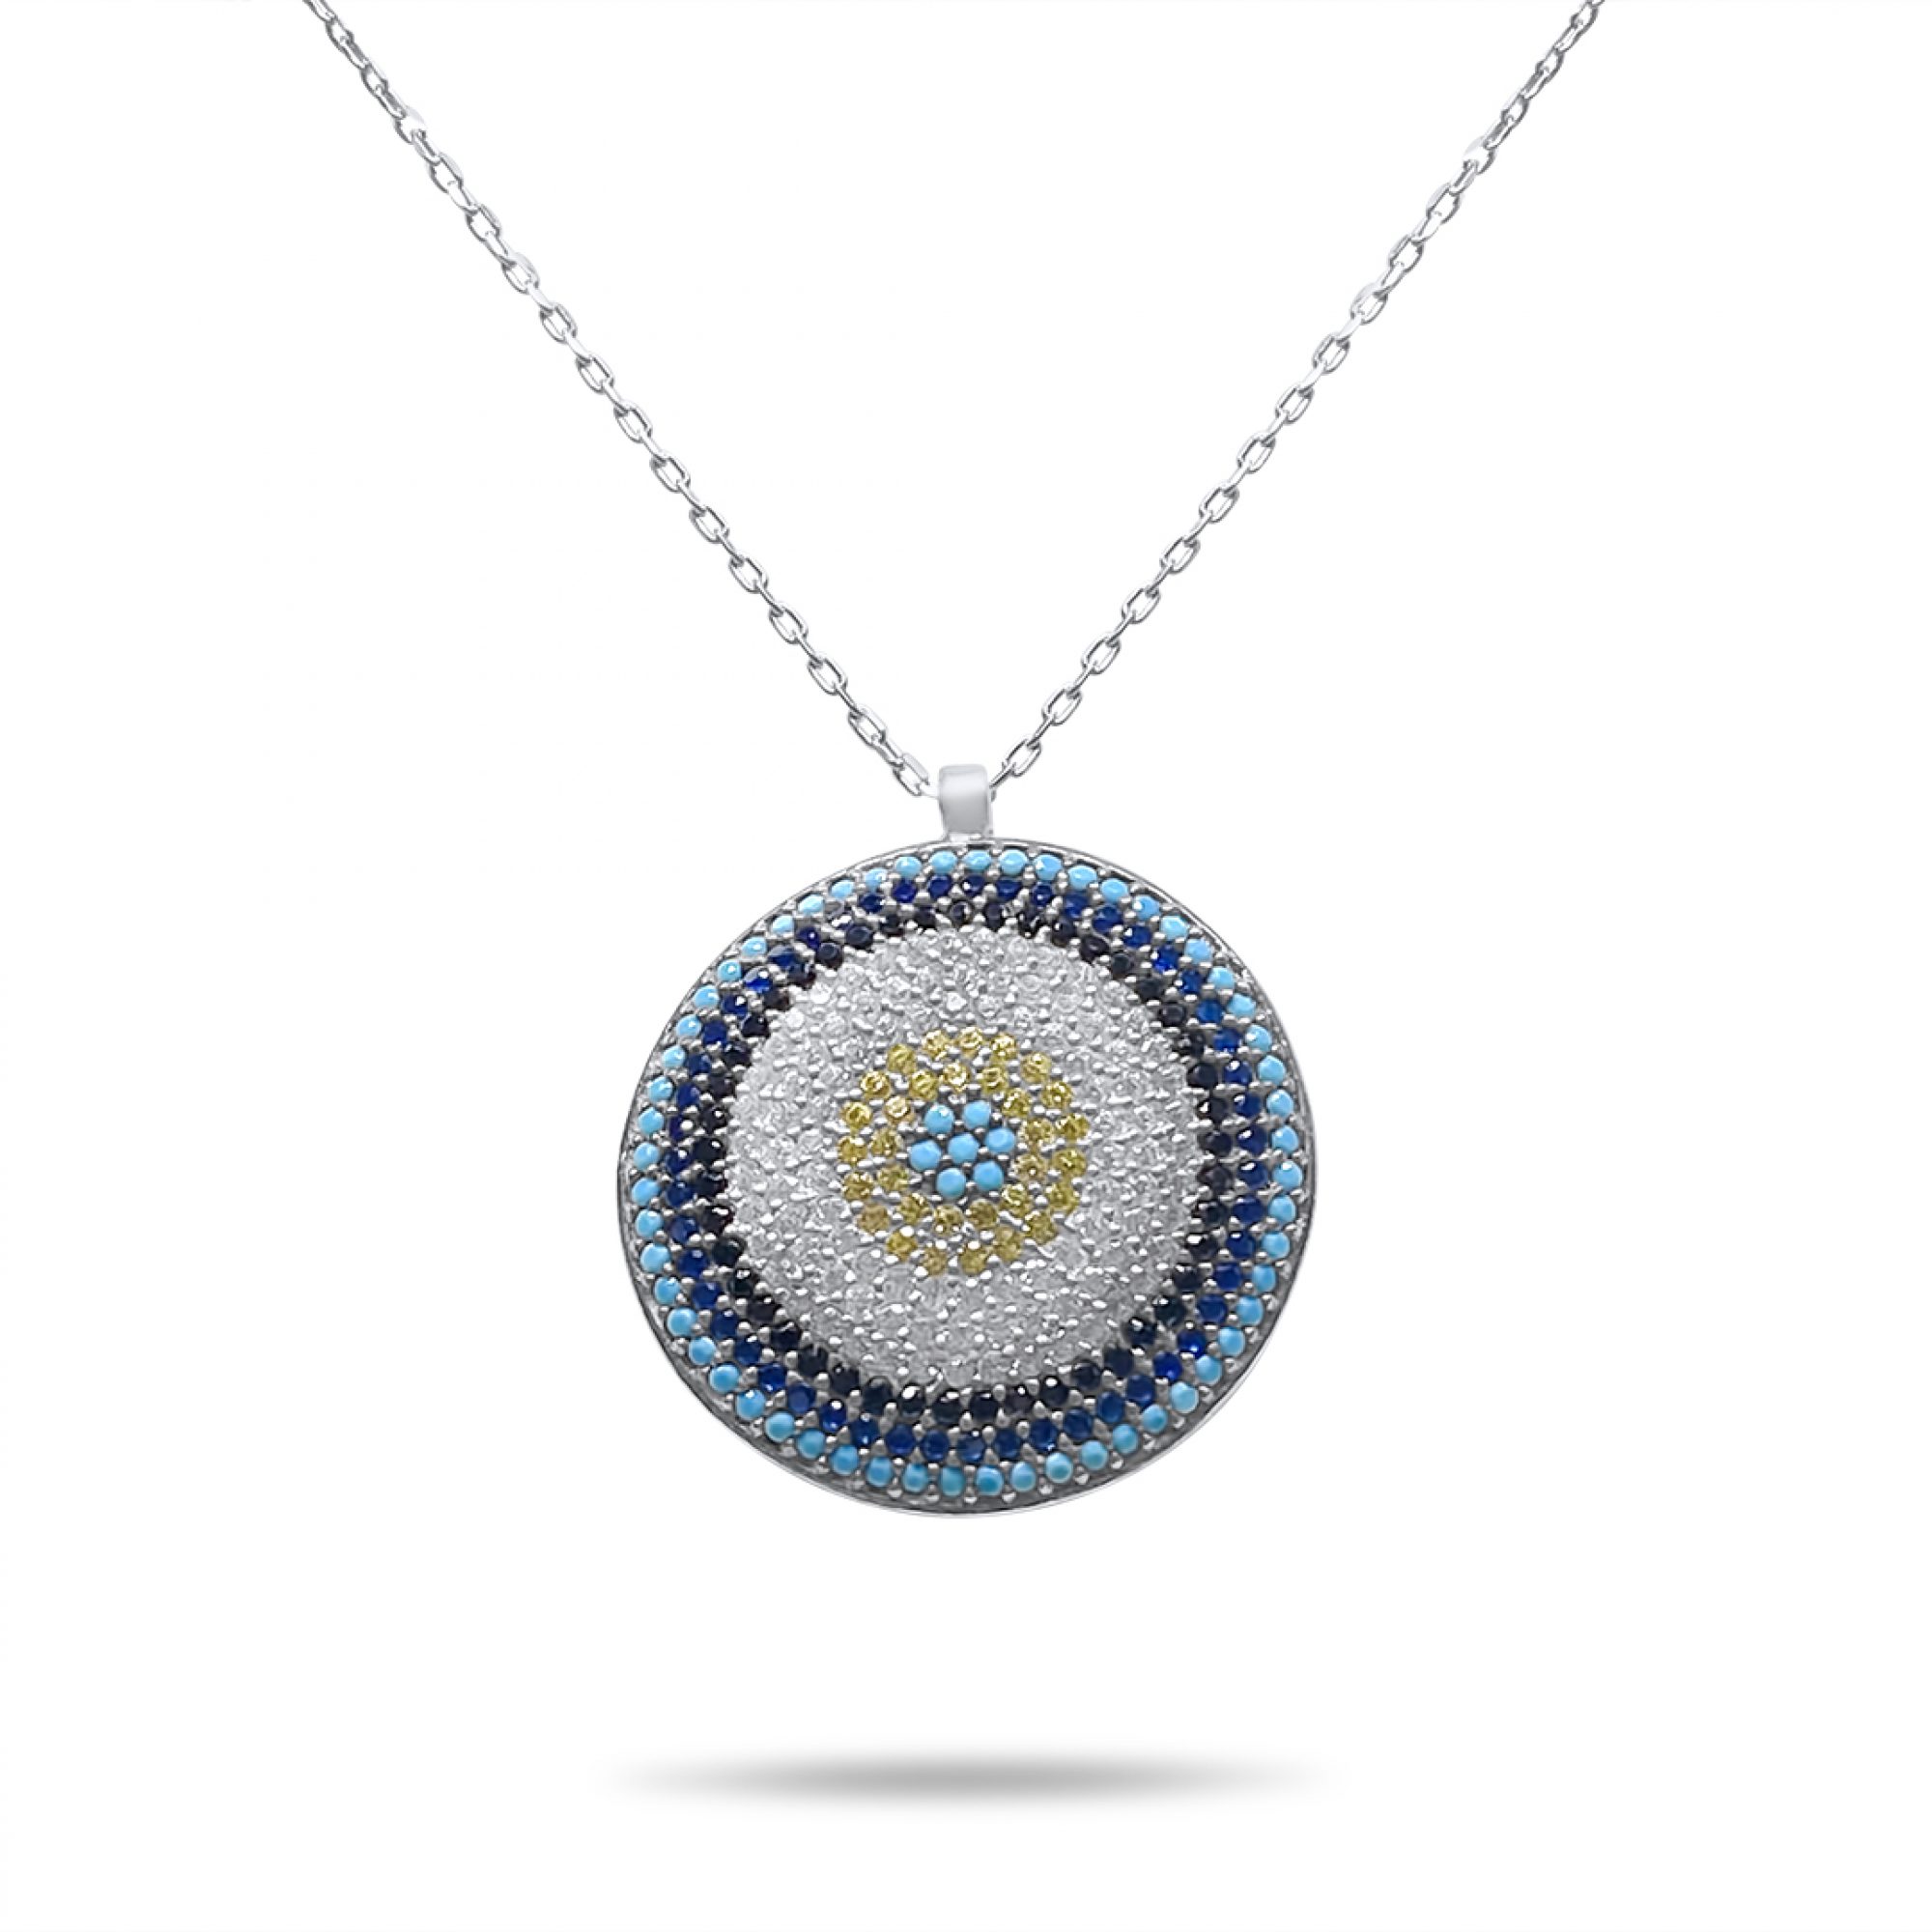 Eye pendant necklace with zircon stones